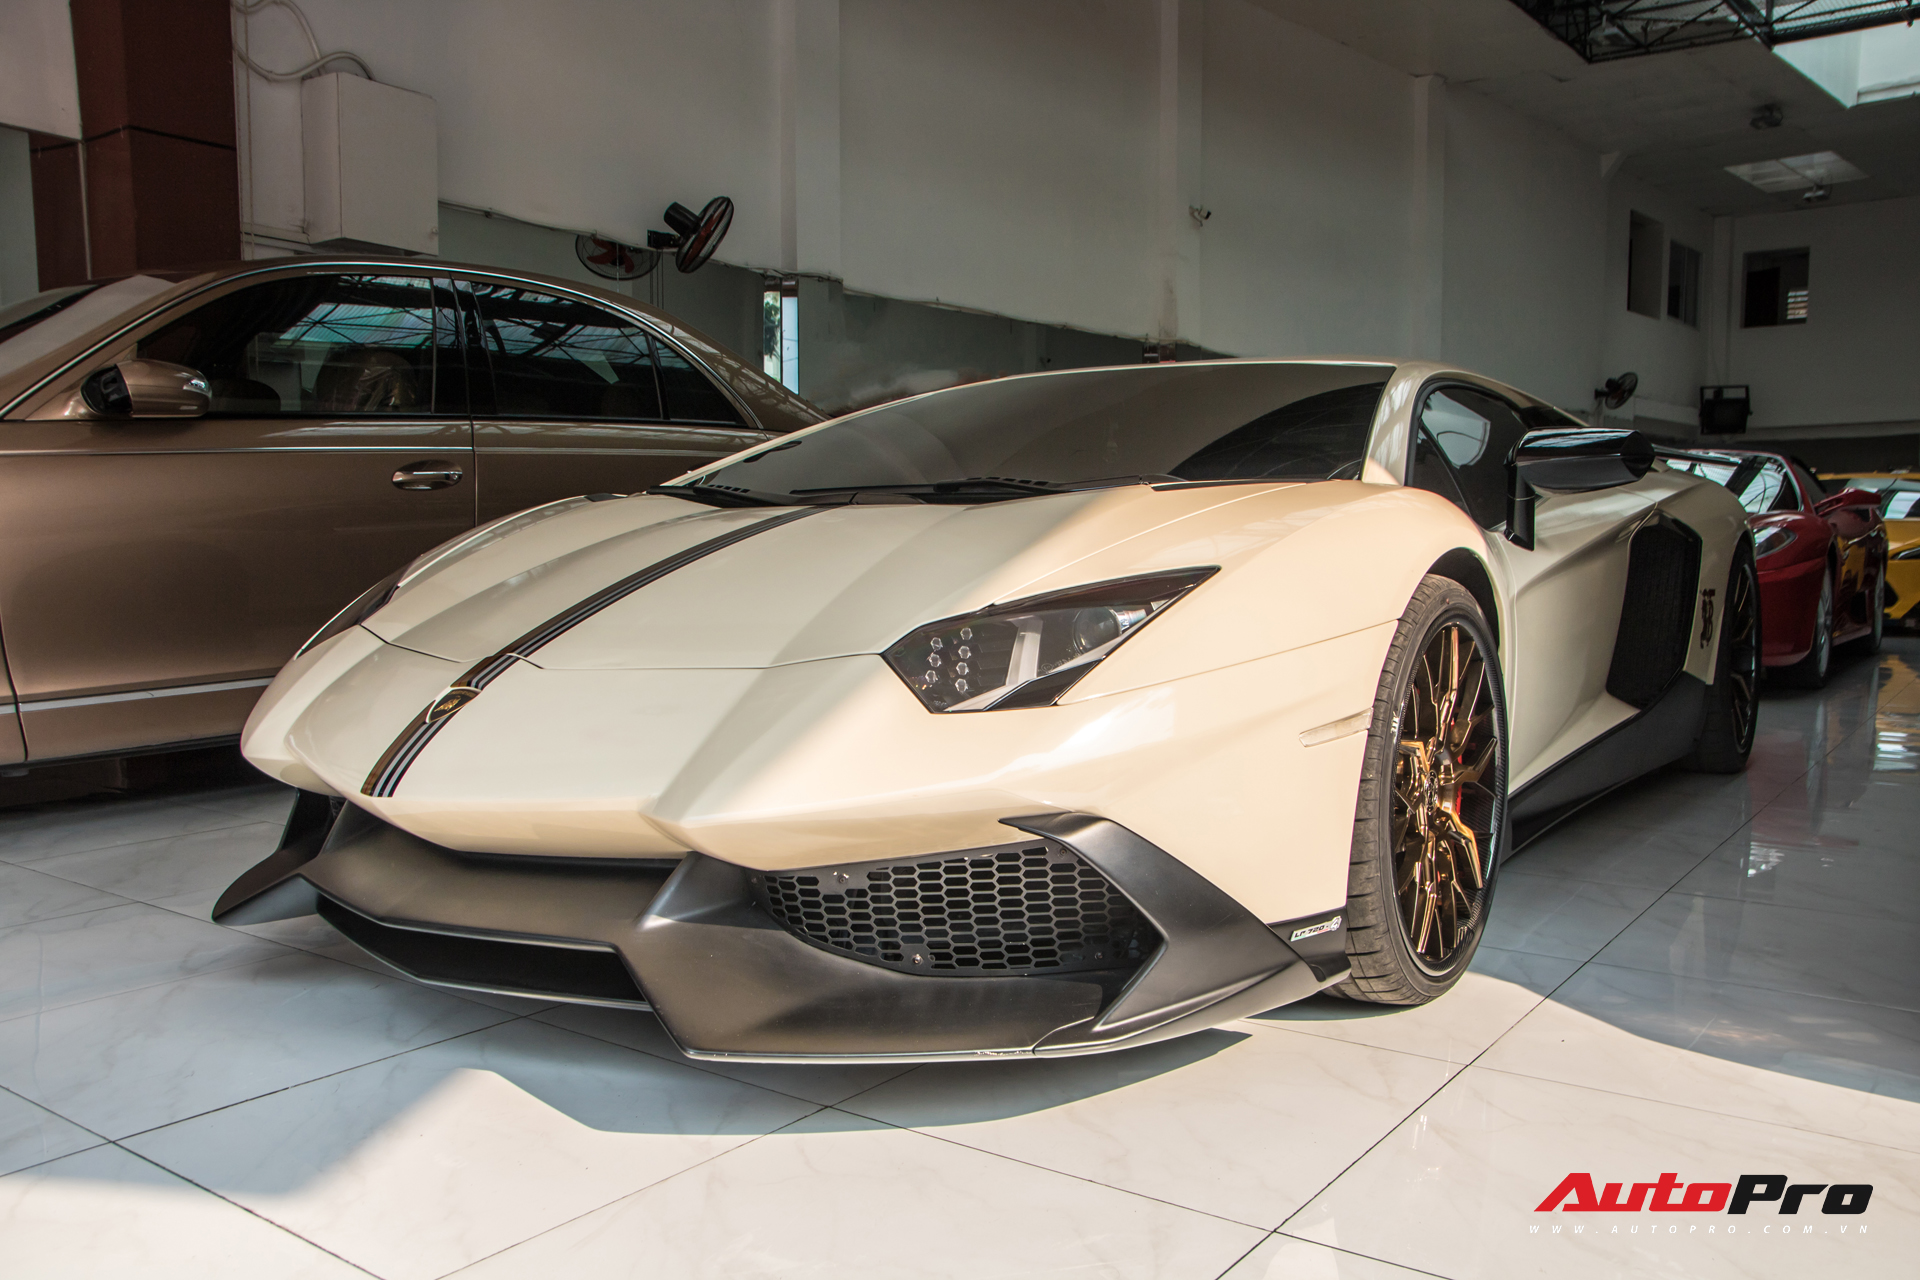 Đại gia Bạc Liêu tiếp tục lột xác Lamborghini Aventador độ phiên bản kỷ niệm 50 năm theo phong cách hãng thời trang đình đám - Ảnh 2.